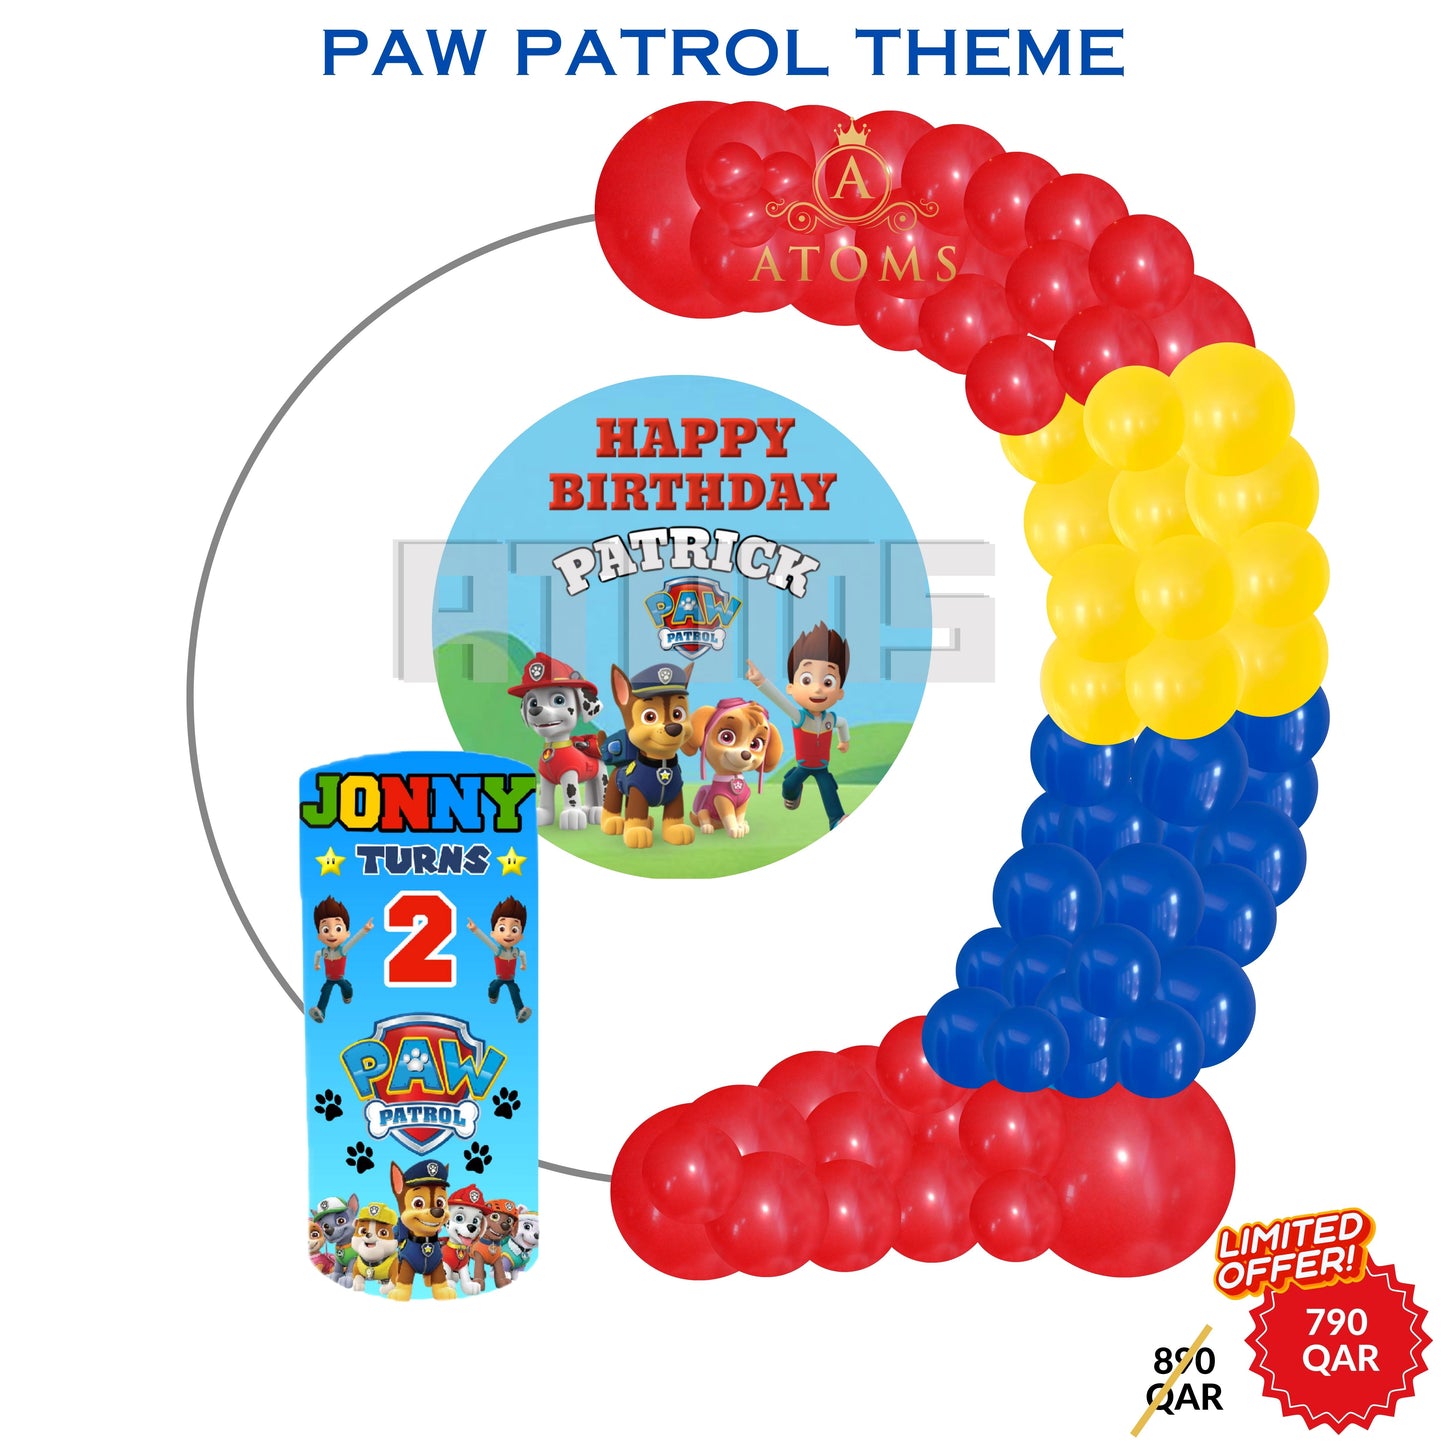 Paw patrol Theme Setup